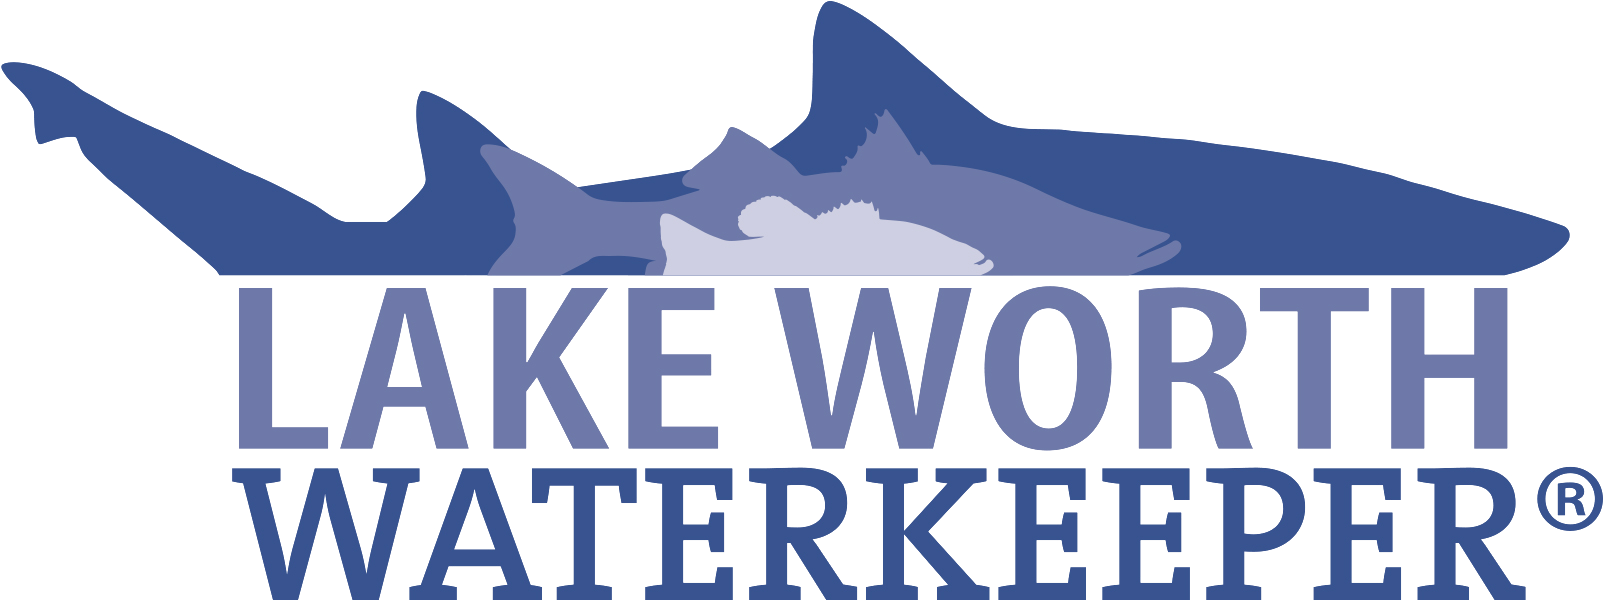 lakeworthwaterkeeper-logo